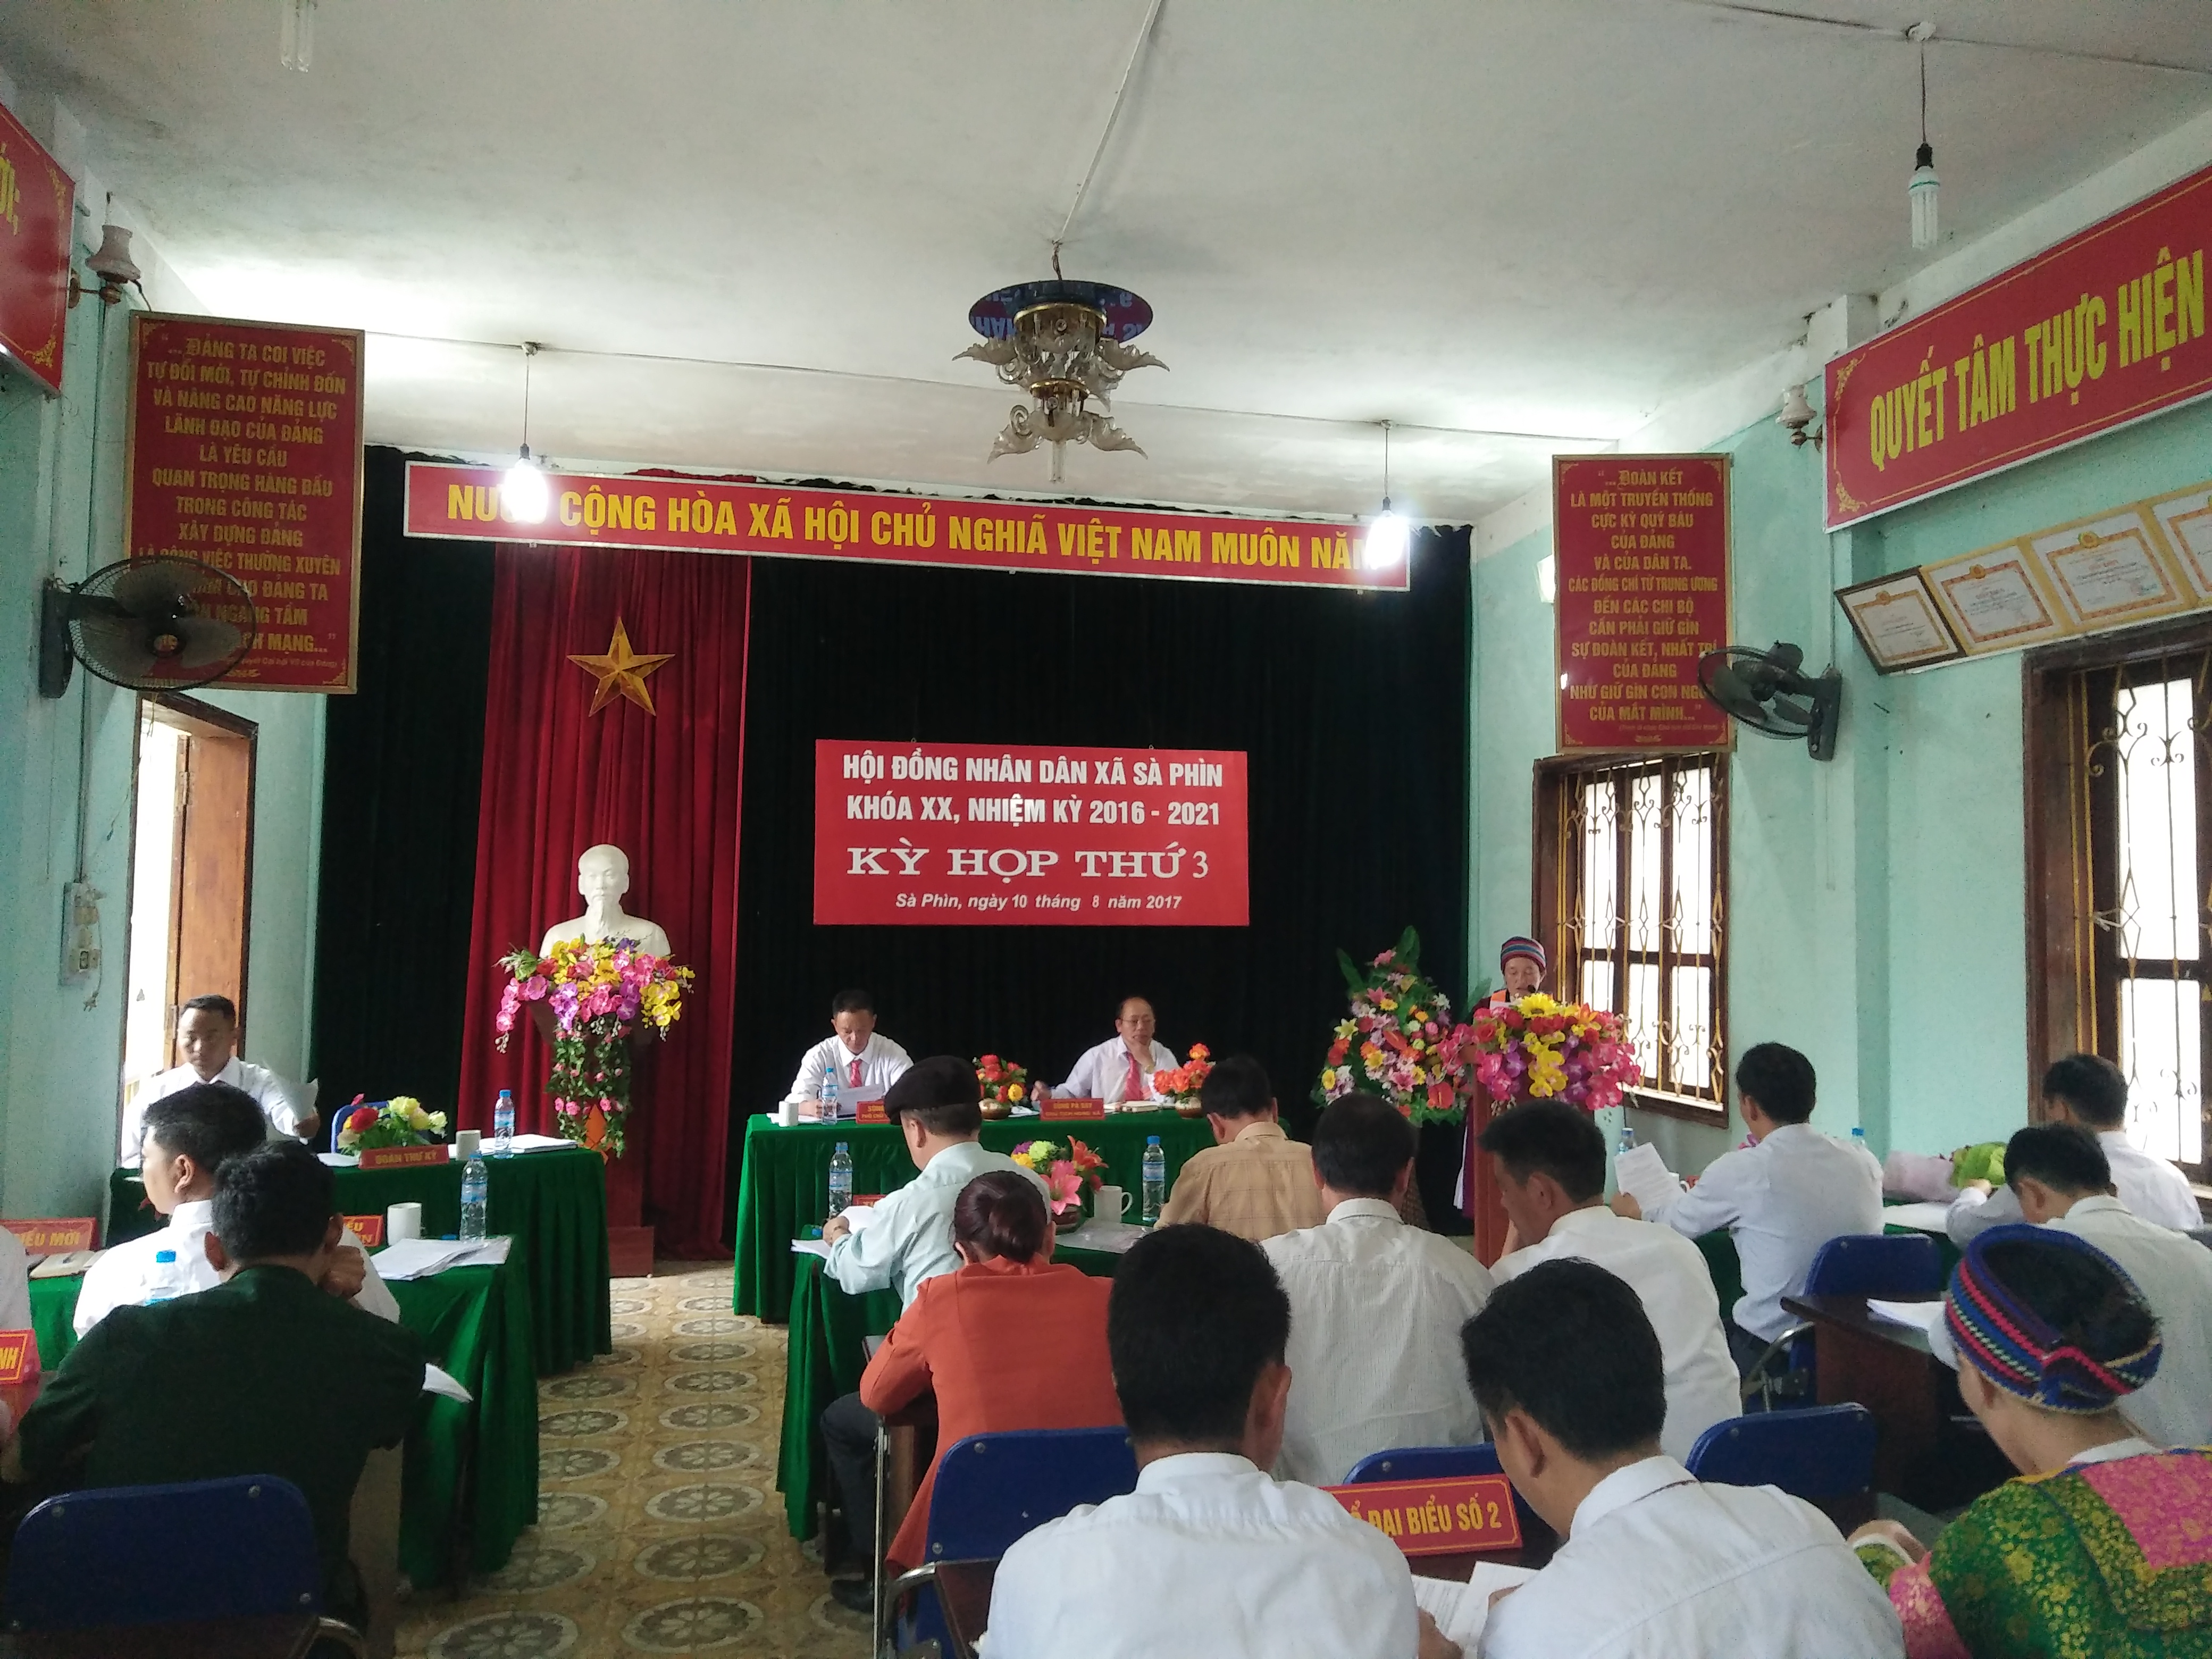 Kỳ họp thứ 3 Hội đồng nhân dân xã Sà Phìn